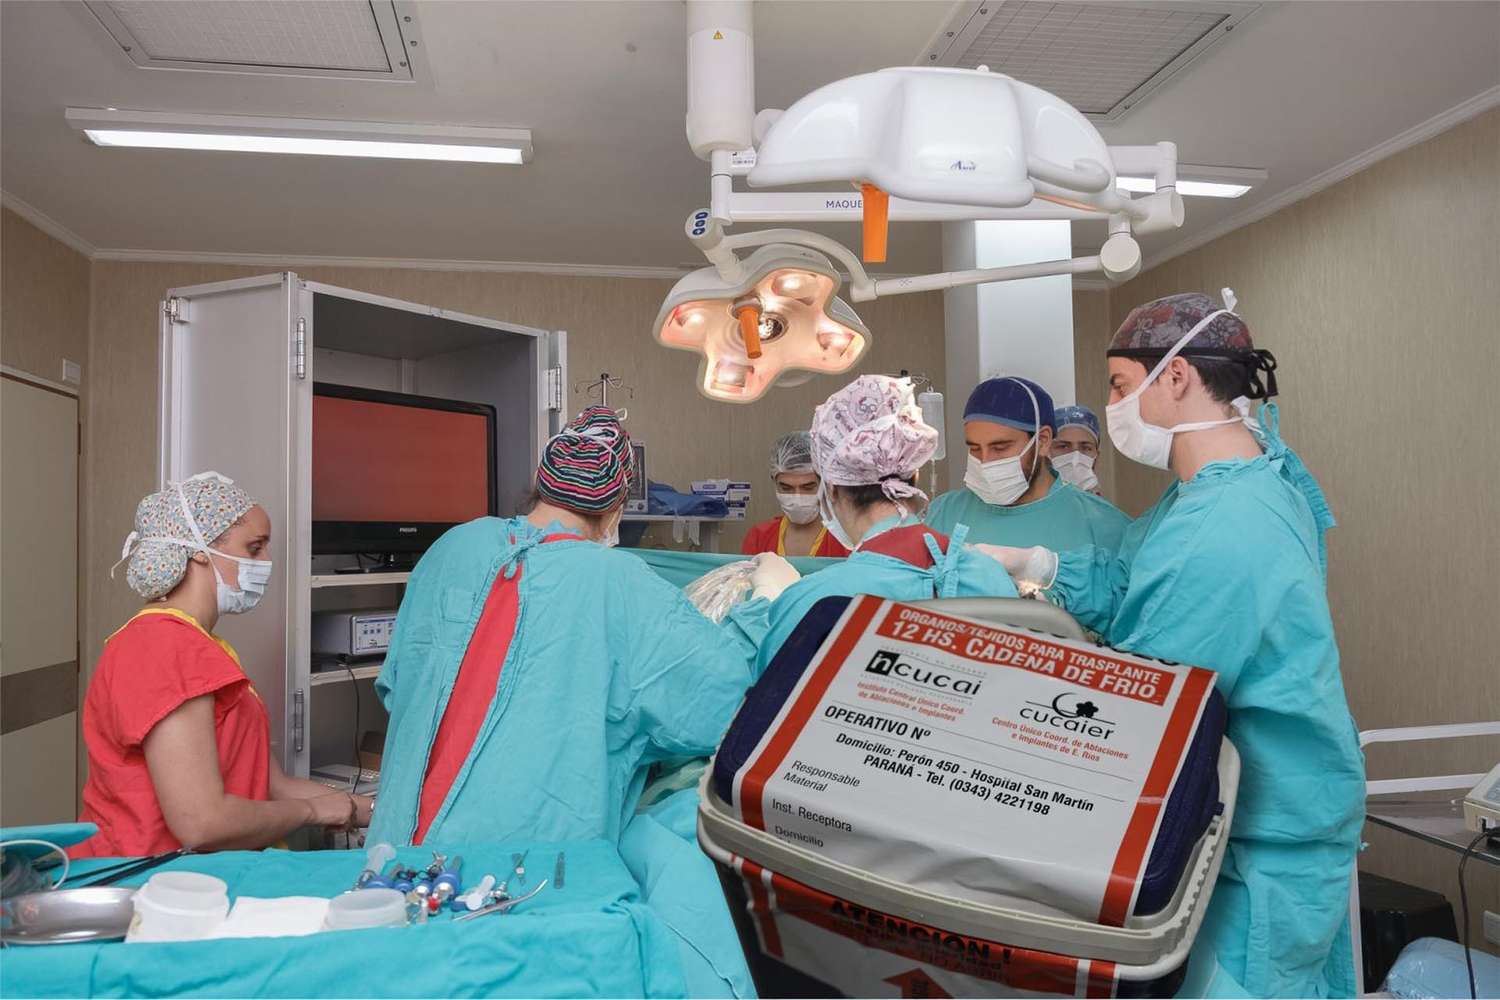 Se concretó en el hospital San Martín la última donación de órganos del 2019